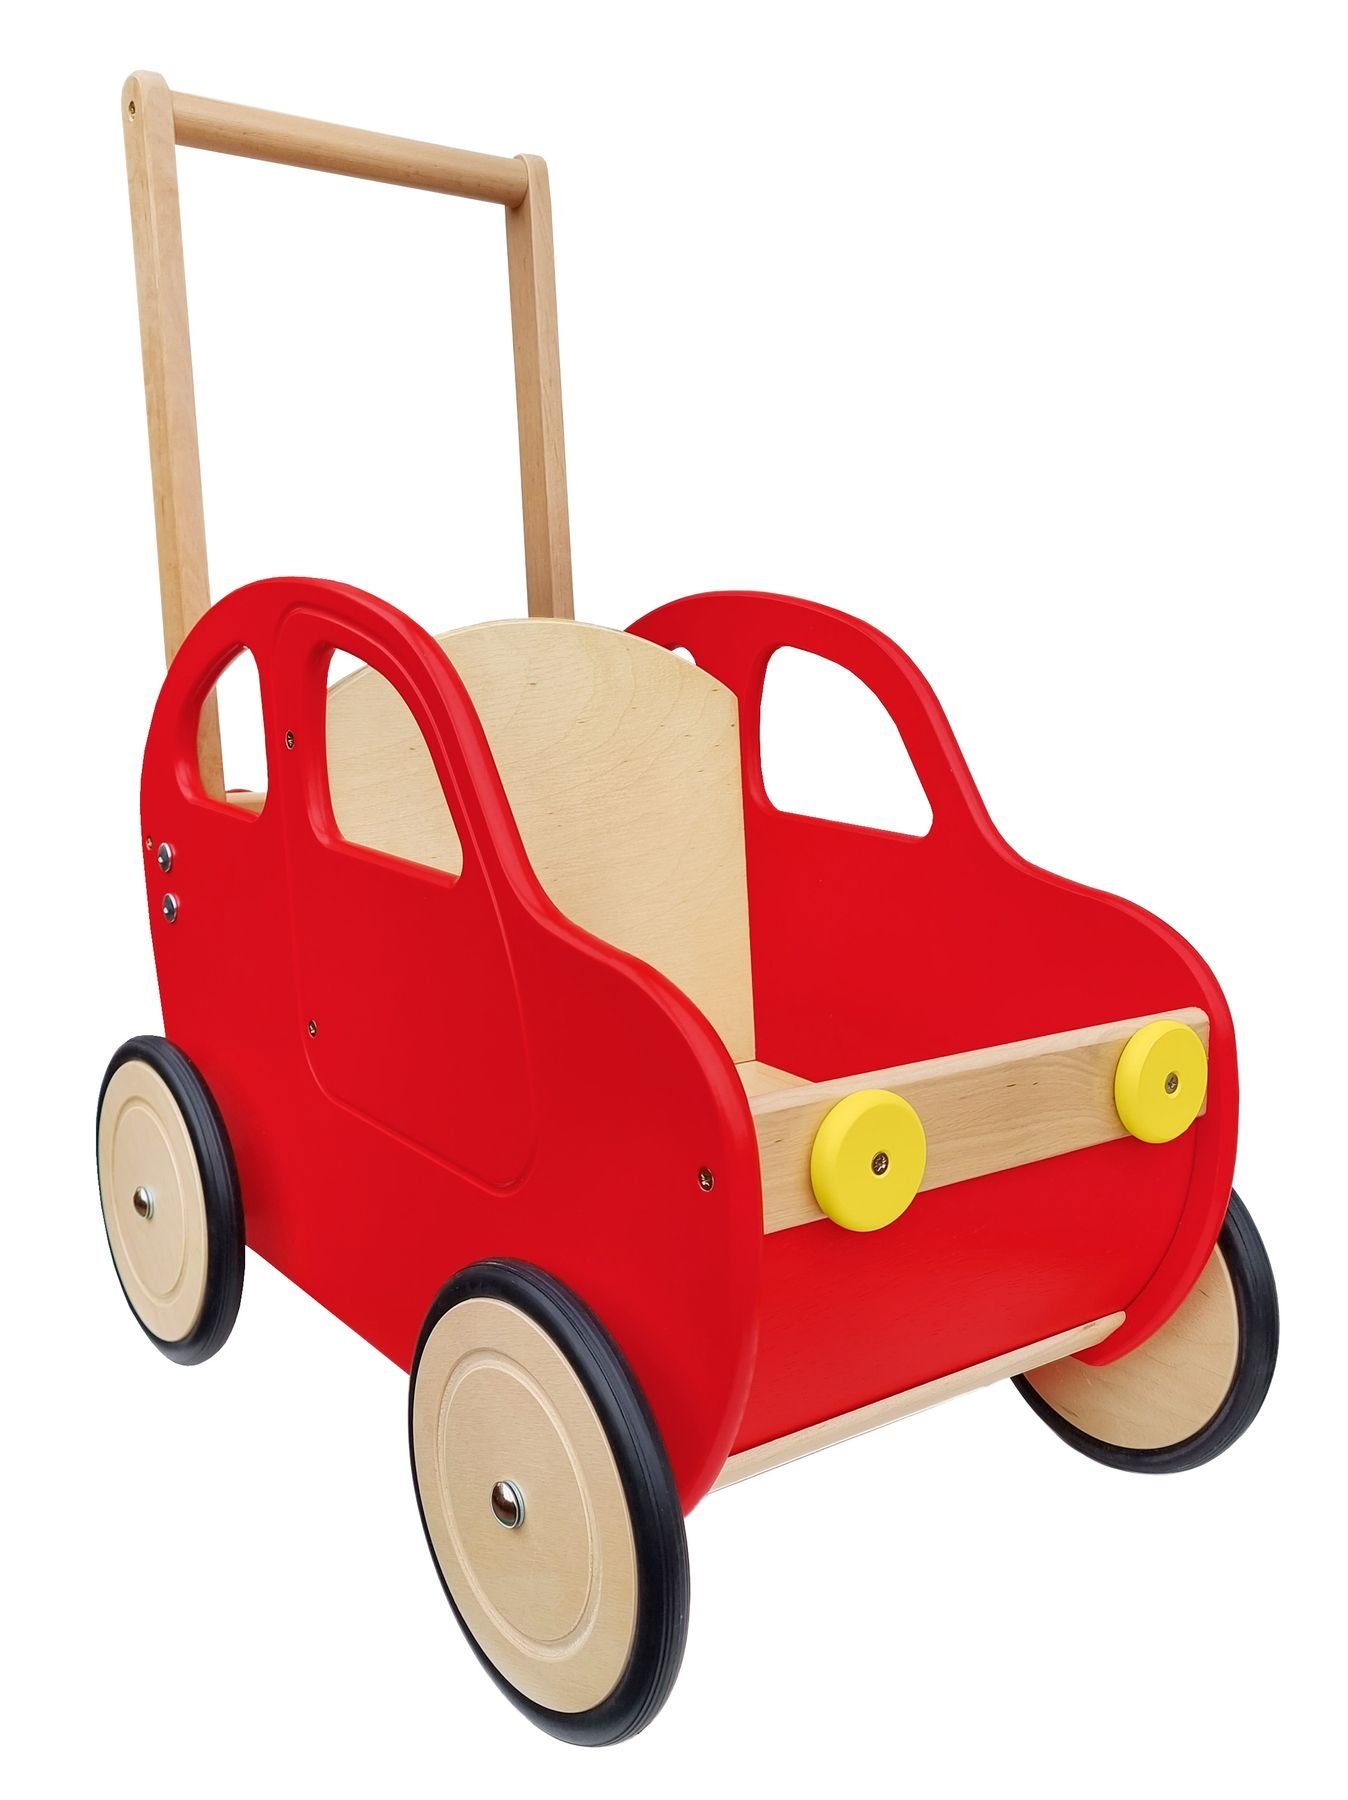 ERST-HOLZ Puppenwagen Puppenwagen rotes Auto Teddytransporter